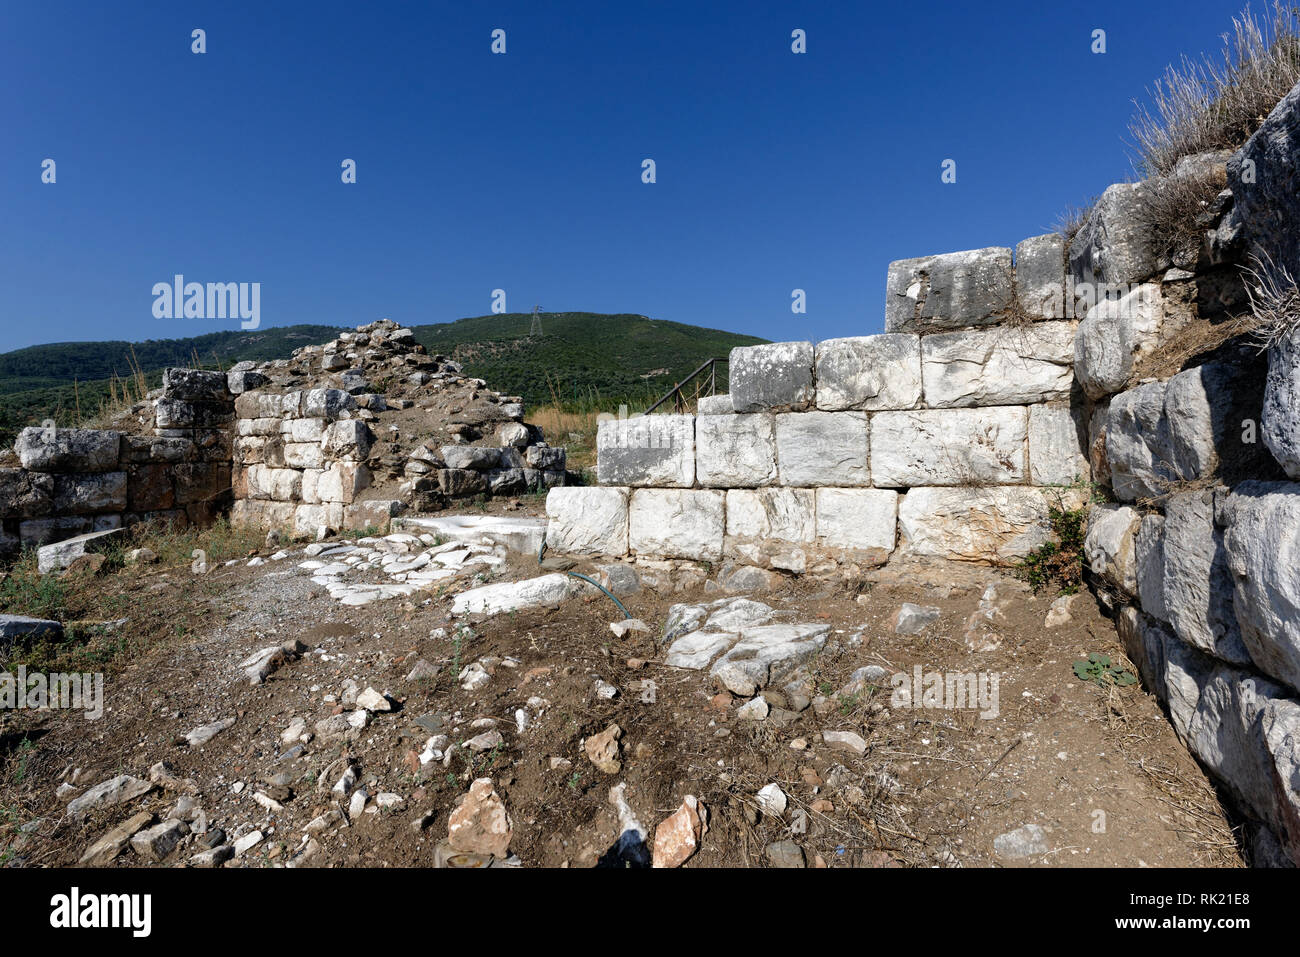 Les murs des fortifications hellénistiques de l'Acropole, Metropolis, l'Ionie, la Turquie. Banque D'Images